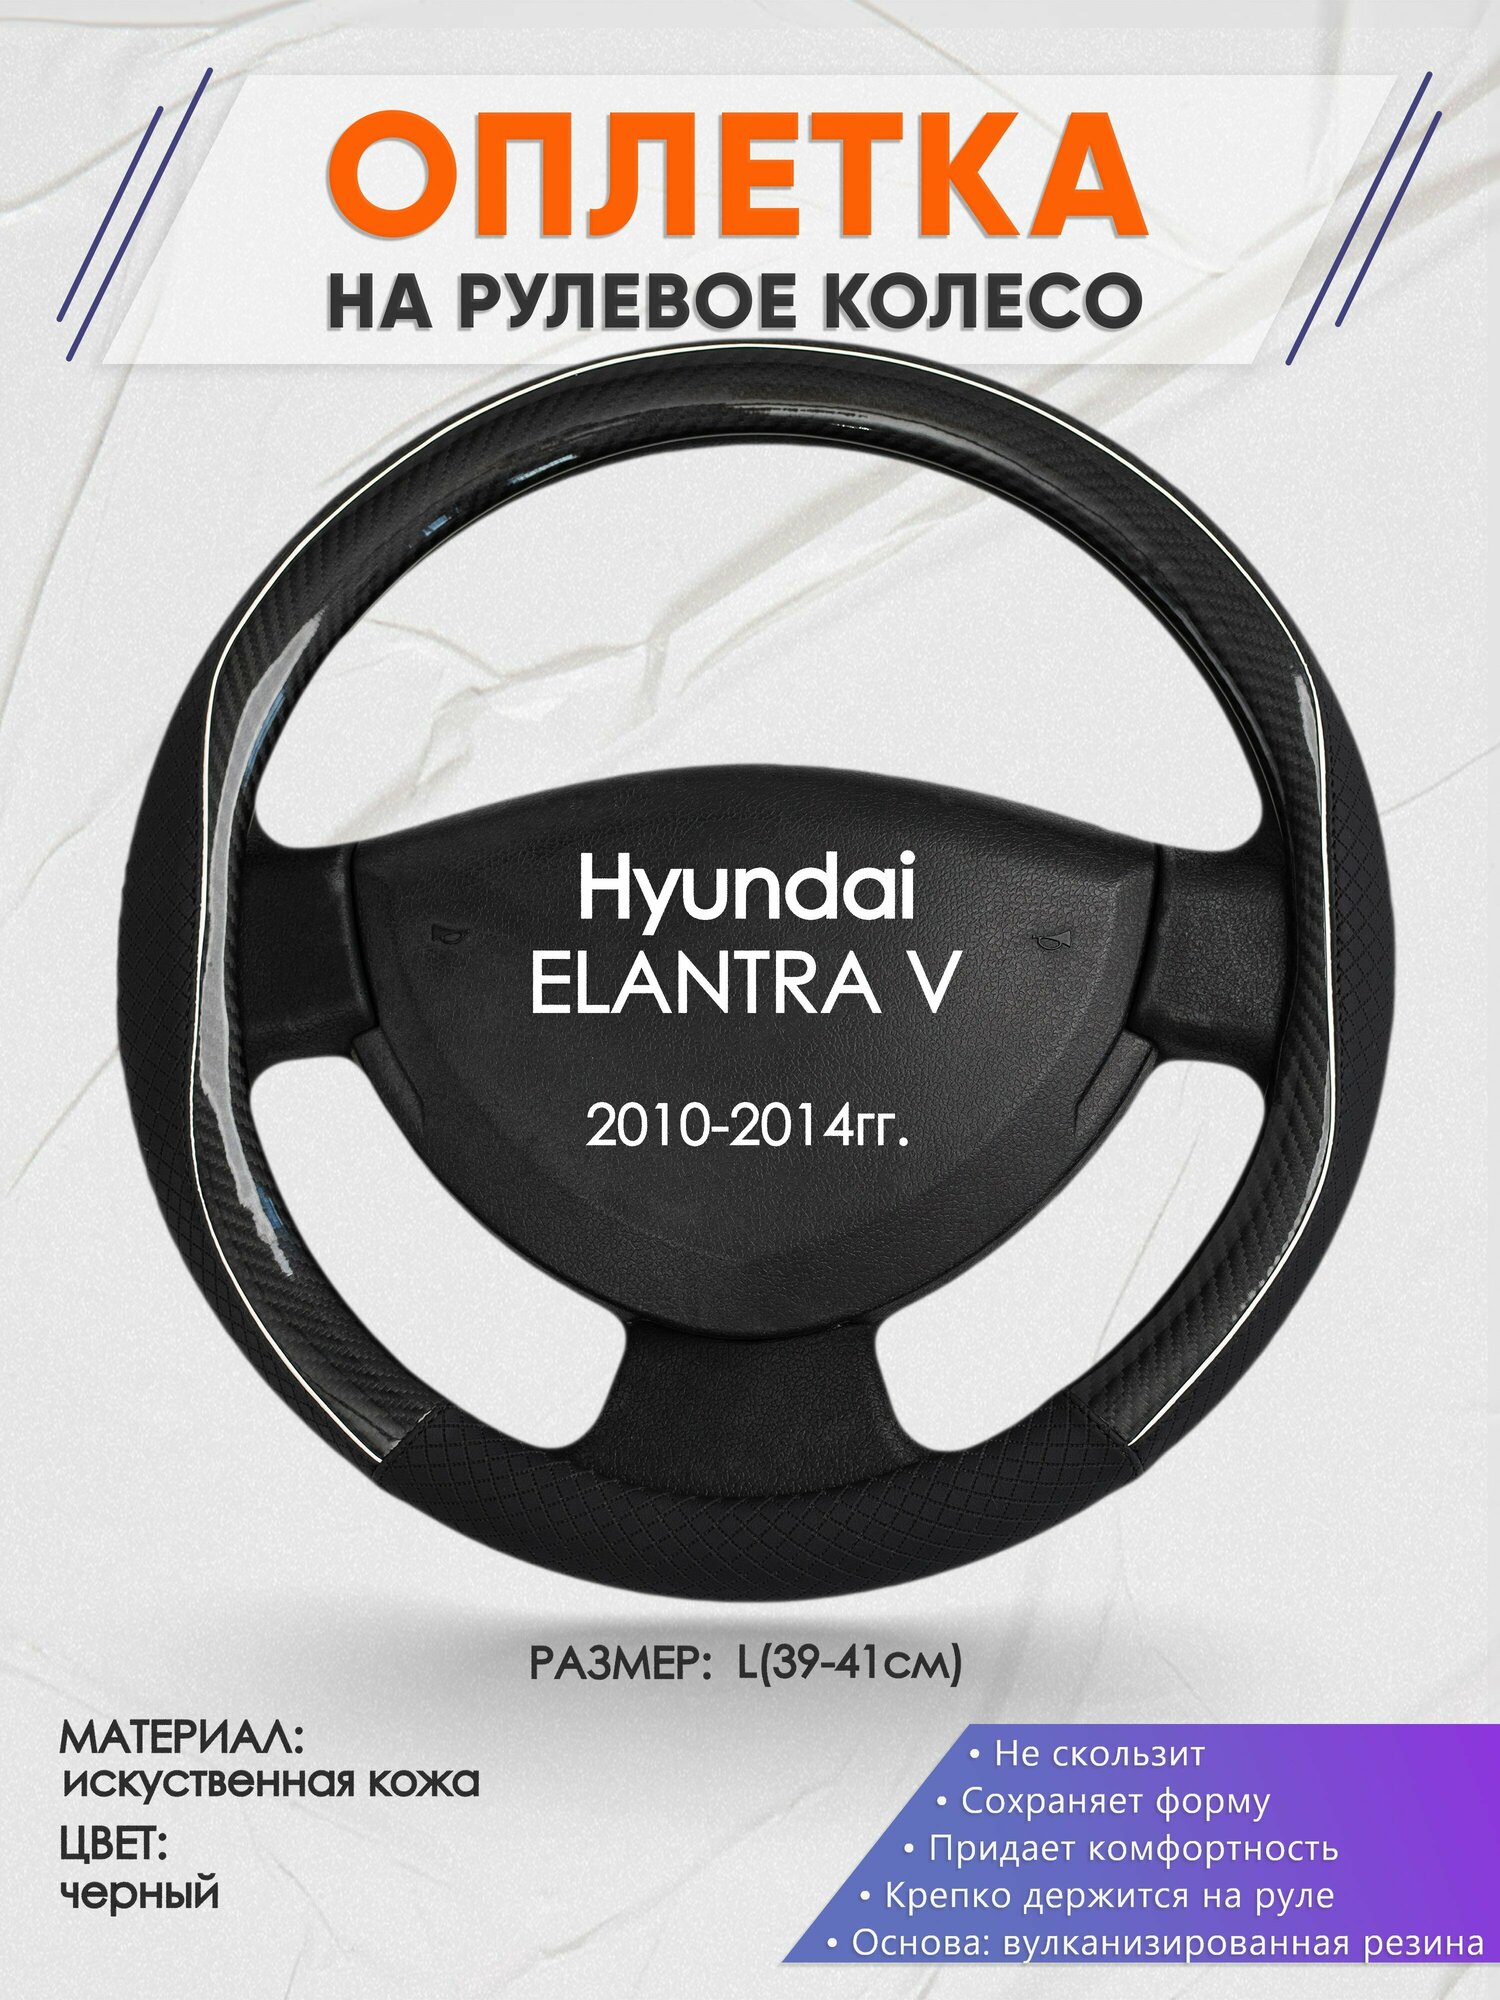 Оплетка на руль для Hyundai ELANTRA V(Хендай Элантра) 2010-2014 L(39-41см) Искусственная кожа 77